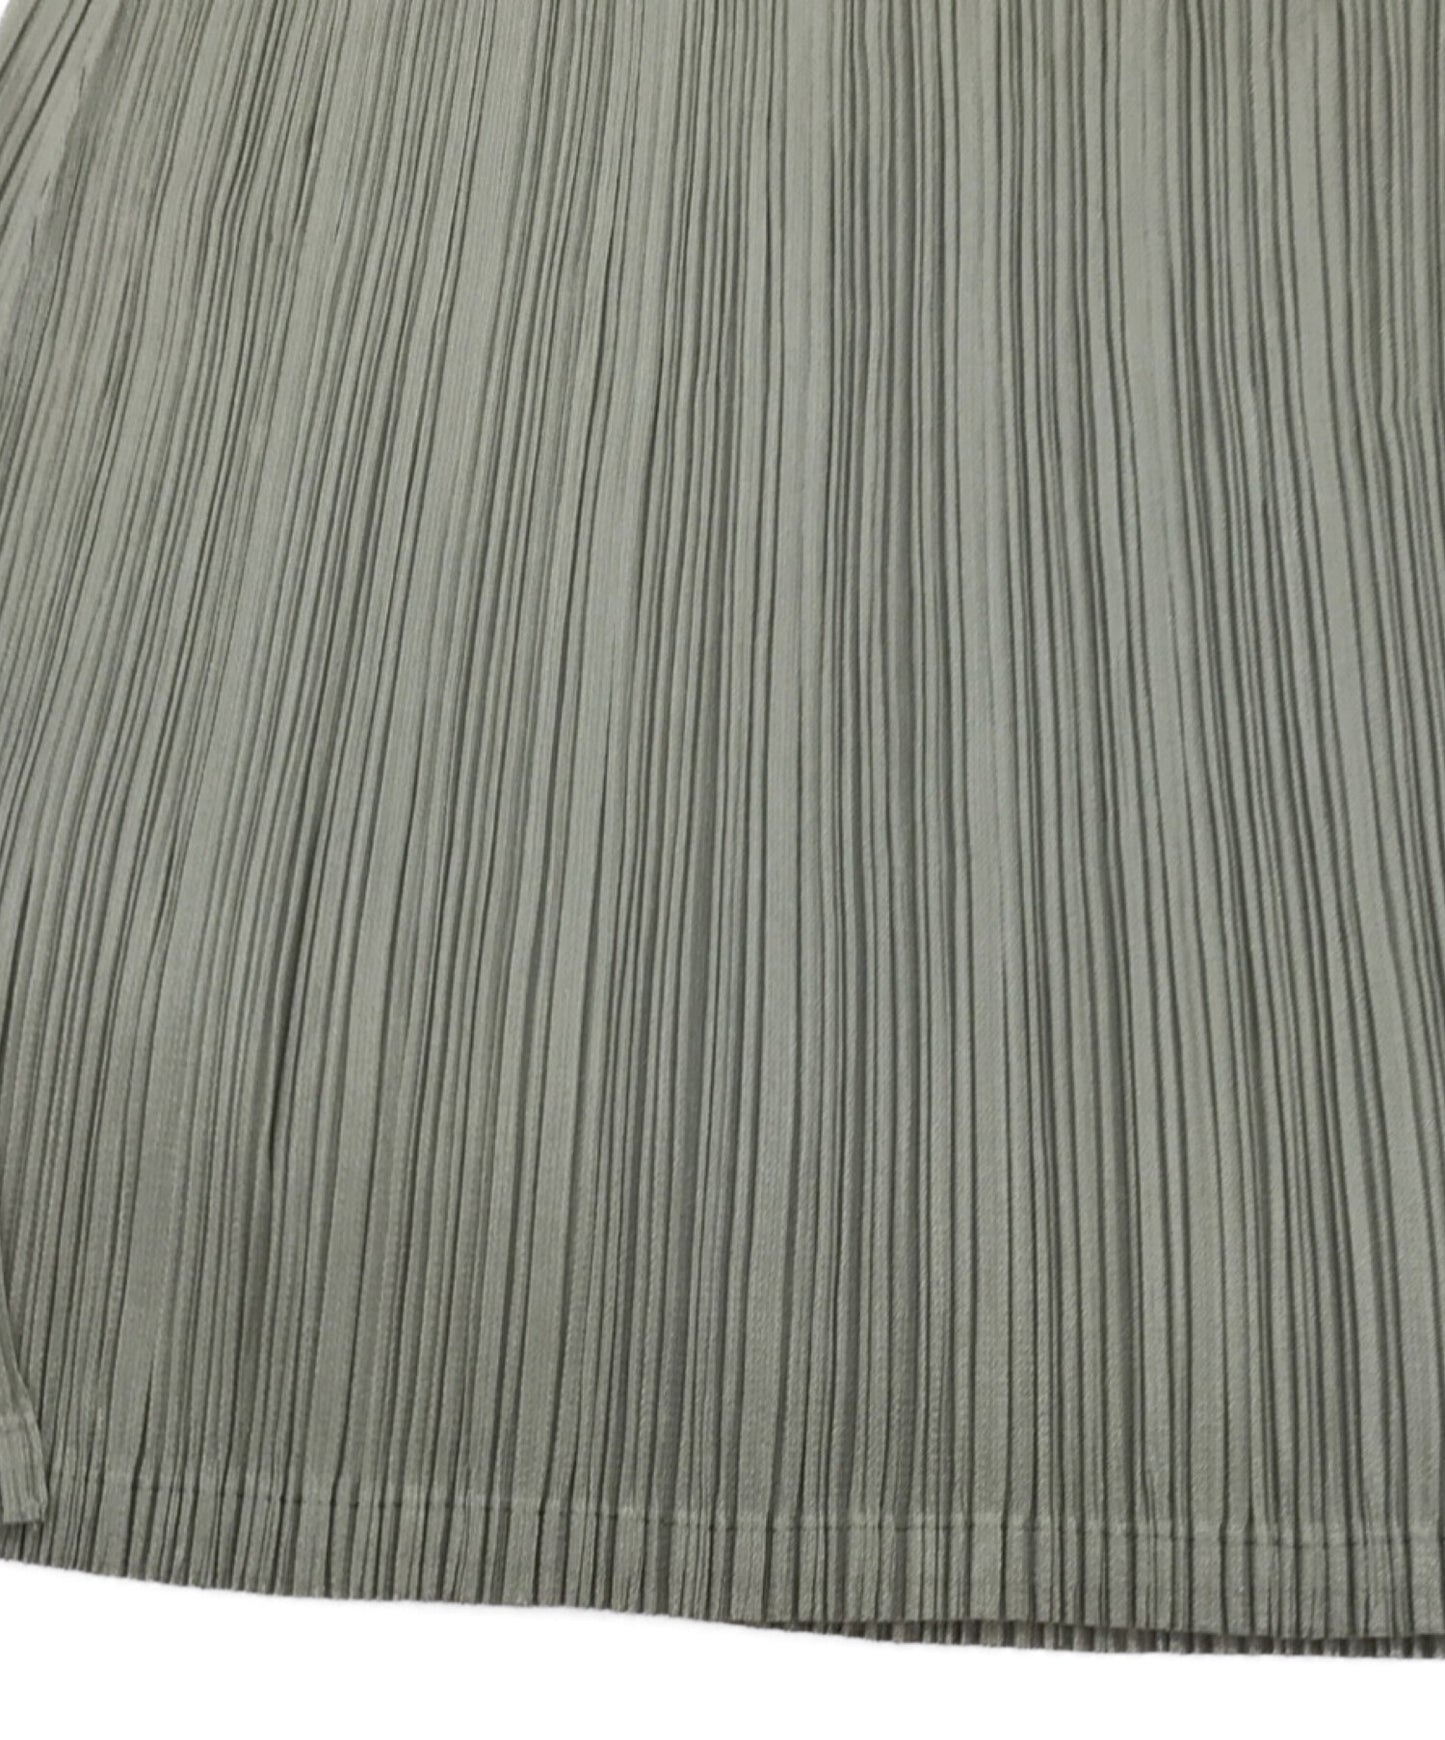 褶皺請打pleat的無袖上衣切割和縫製無袖切口和縫製pp51-jt207